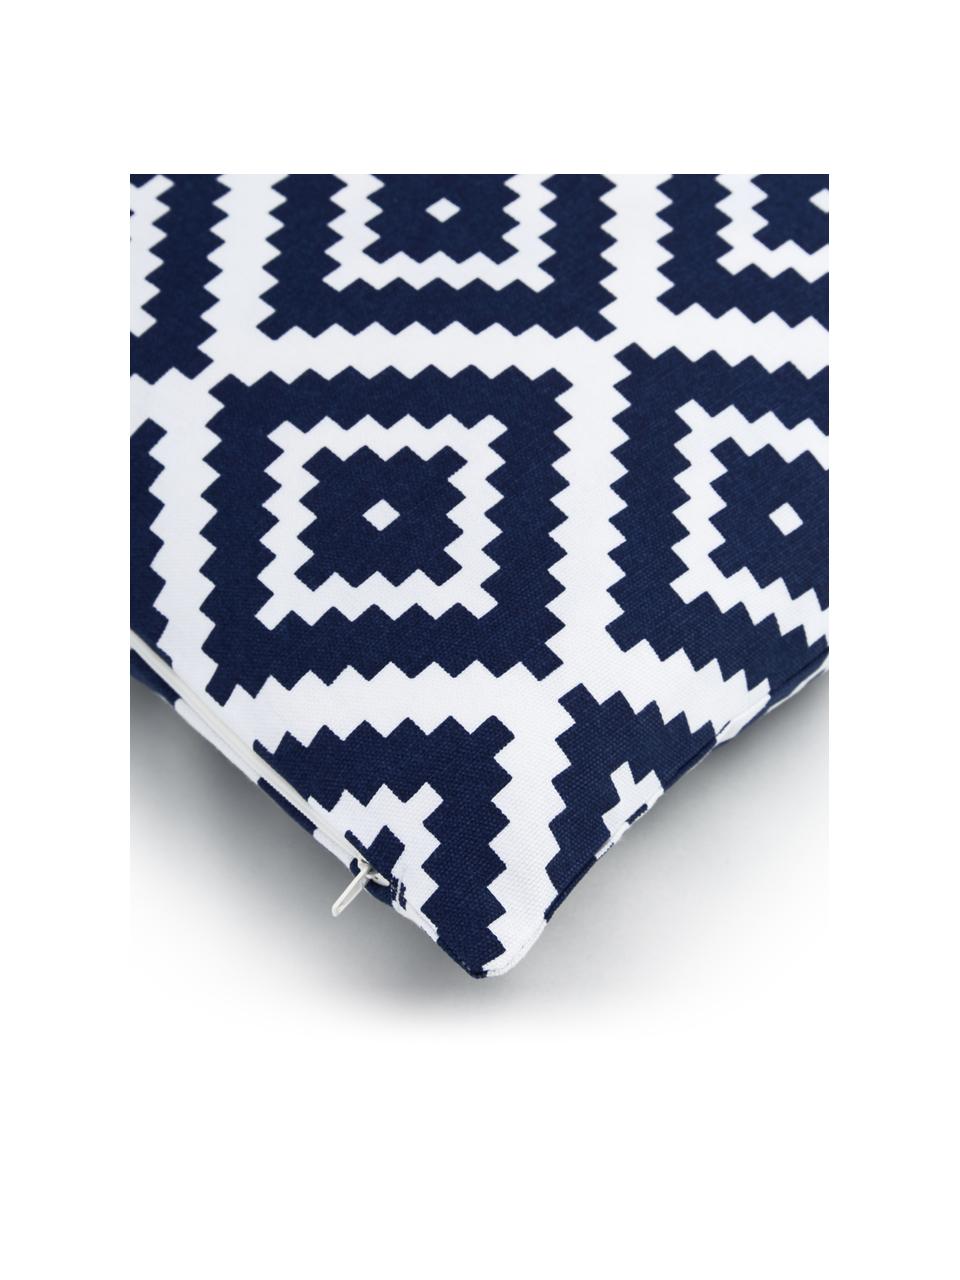 Kissenhülle Miami mit grafischem Muster, 100% Baumwolle, Dunkelblau, Weiß, B 45 x L 45 cm